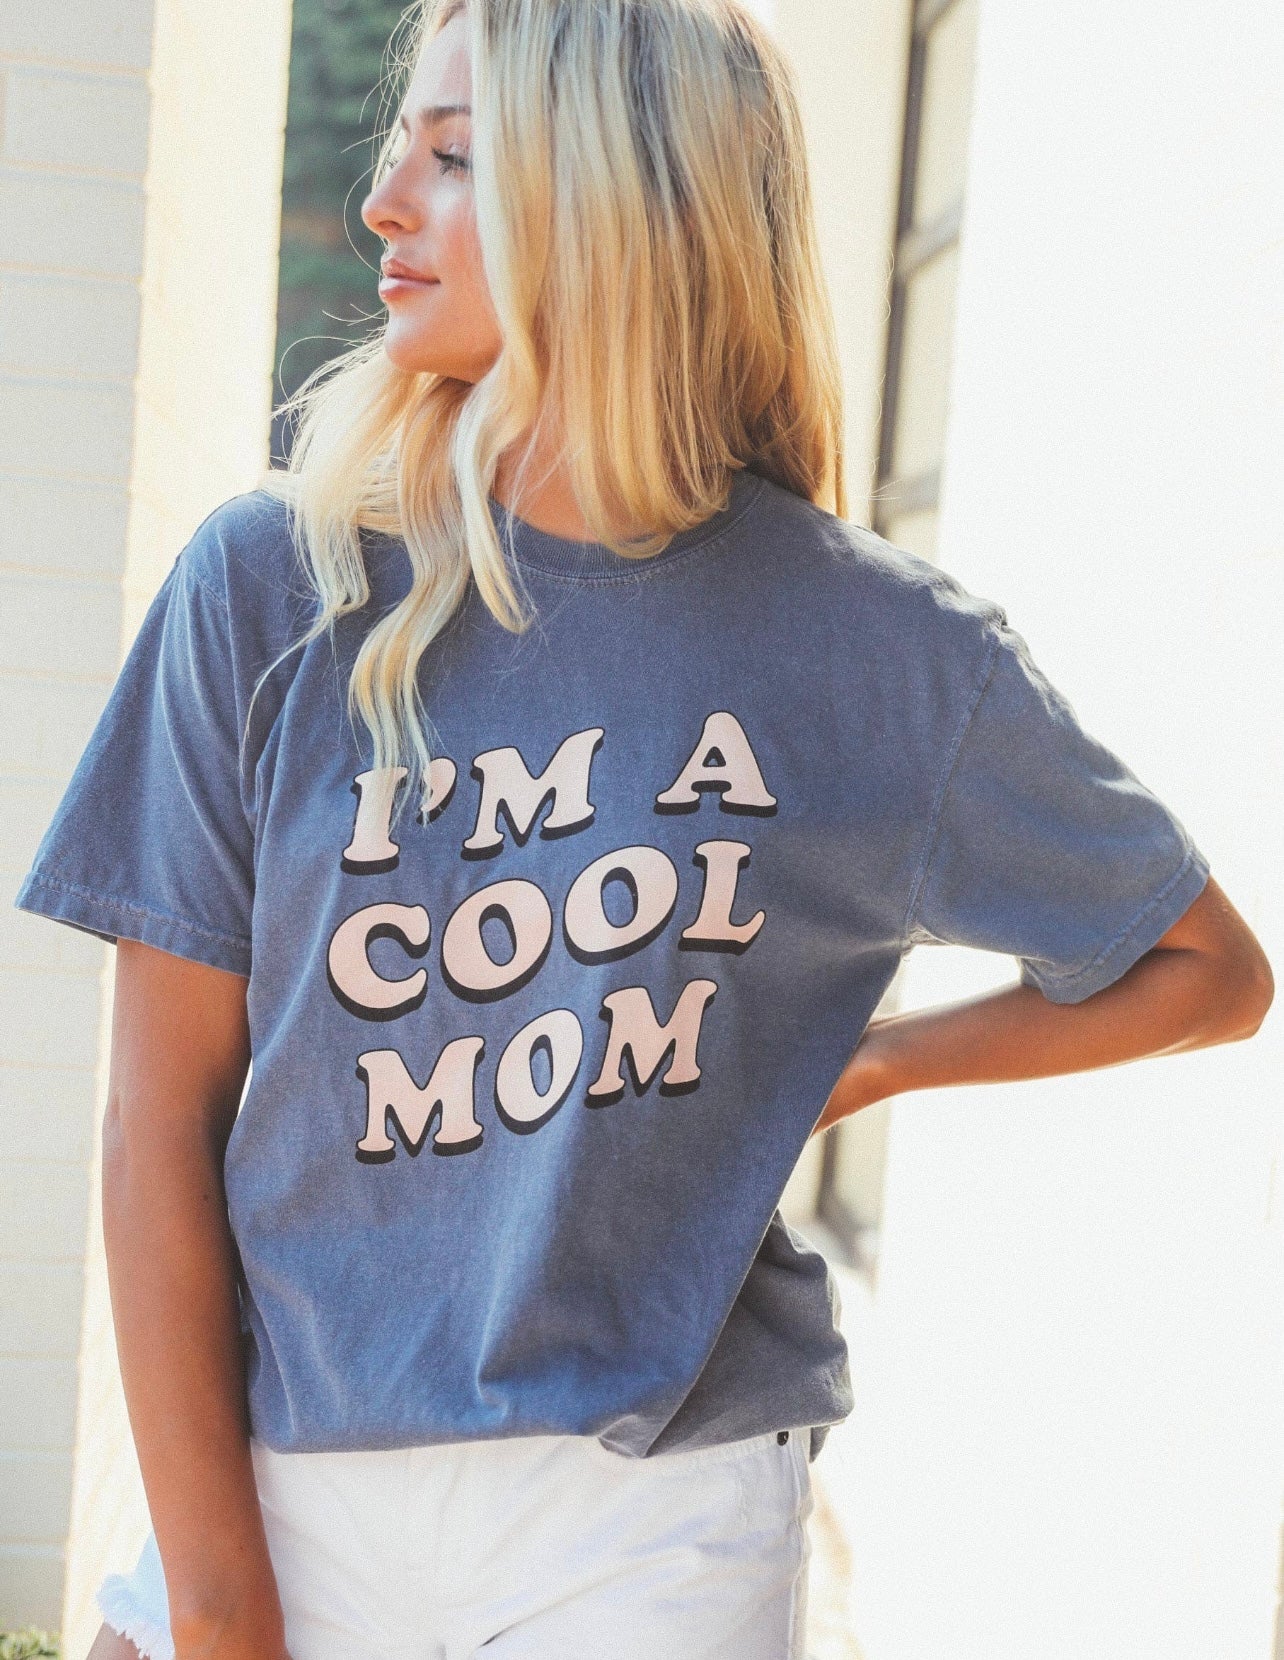 I’m a cool mom